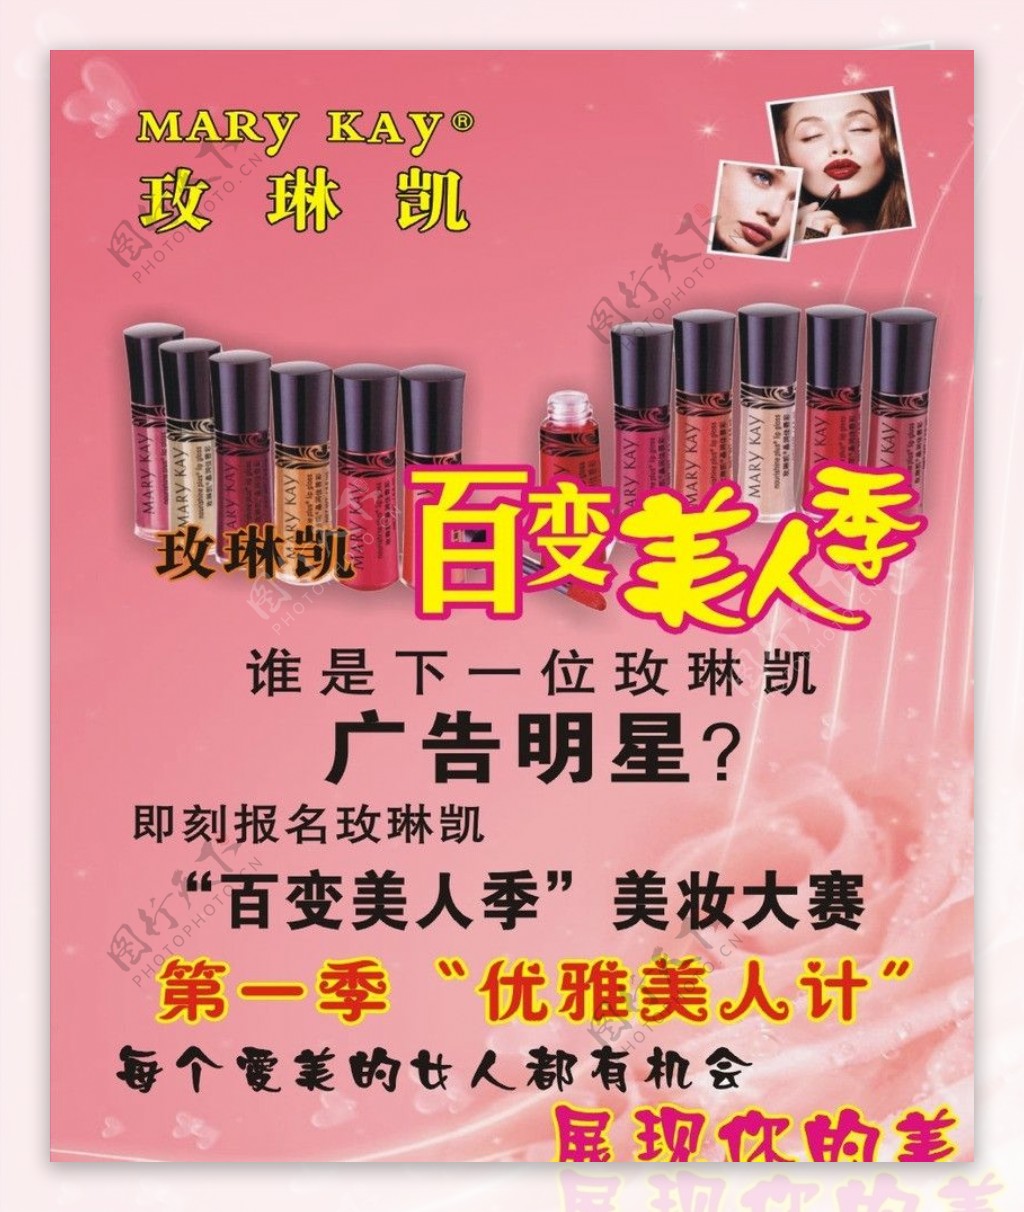 玫琳凯促销十月百变美人季广告明星美女唇彩广告背景图片